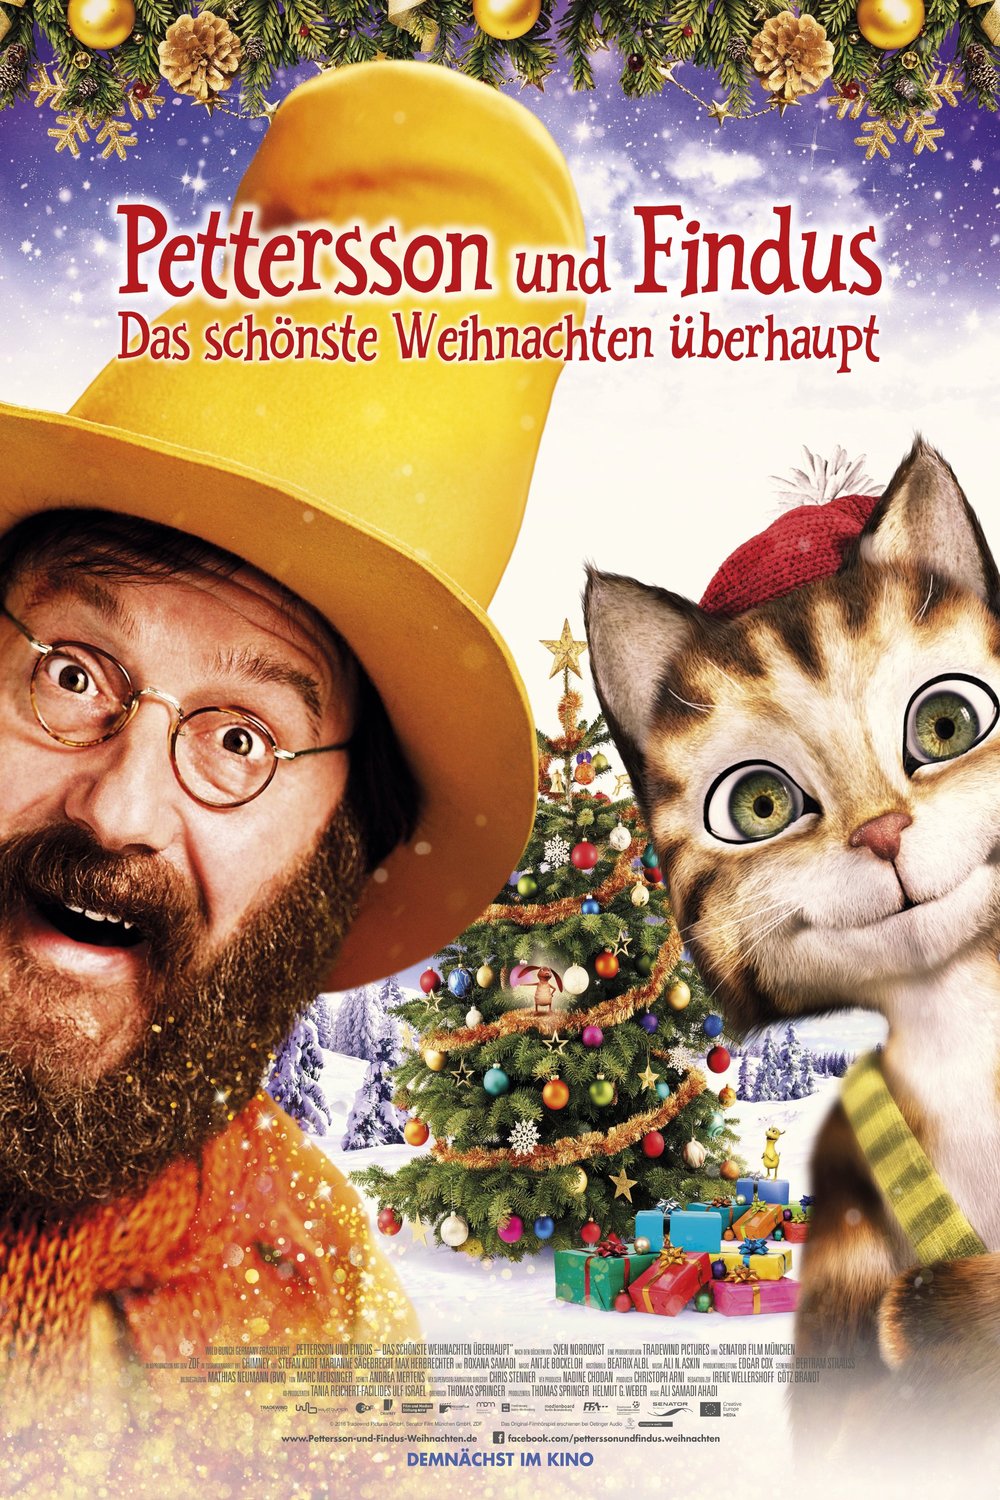 German poster of the movie Pettersson und Findus 2 - Das schonste Weihnachten uberhaupt